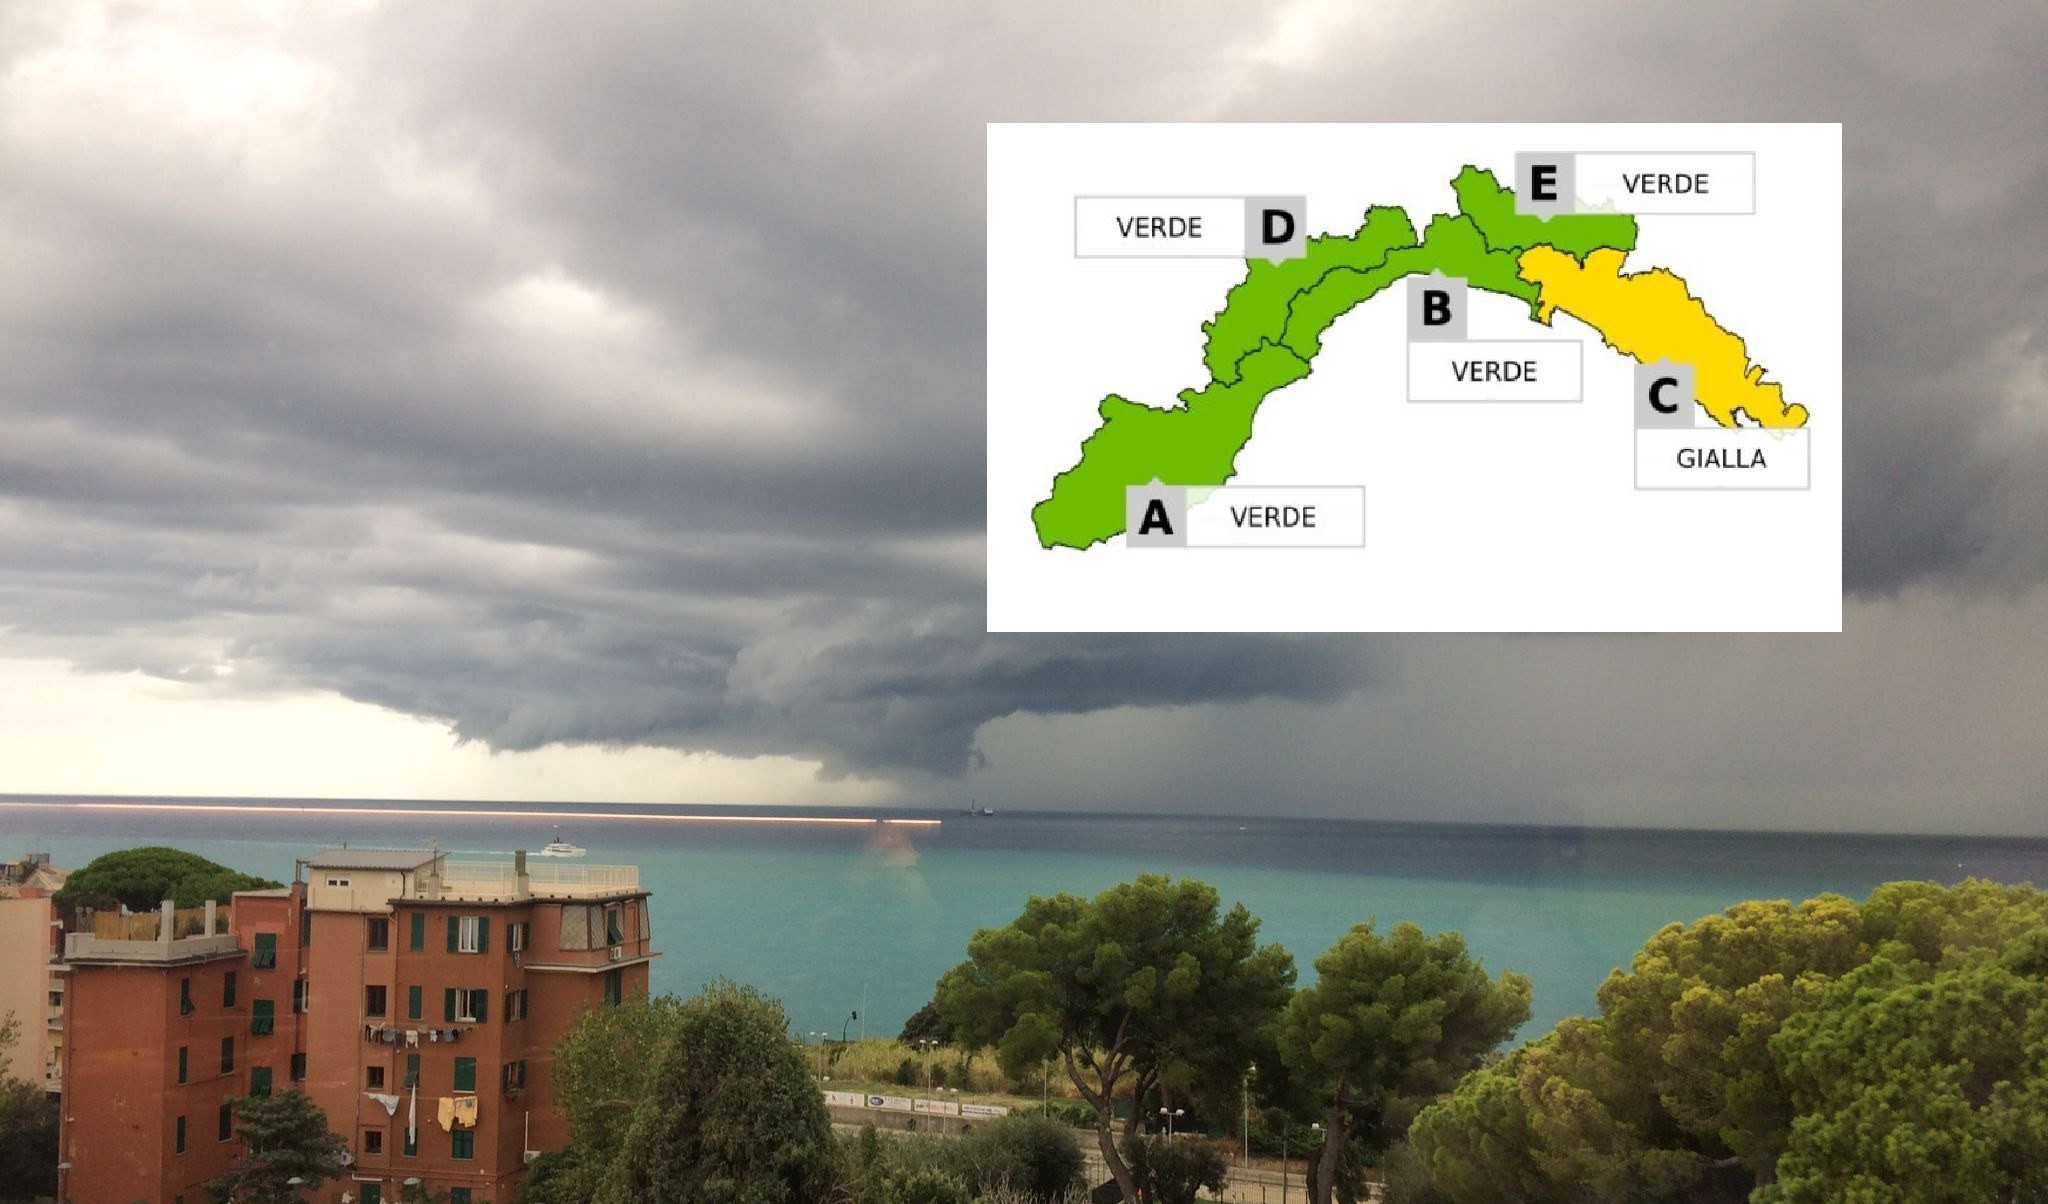 Maltempo in Liguria: allerta gialla per pioggia sul levante